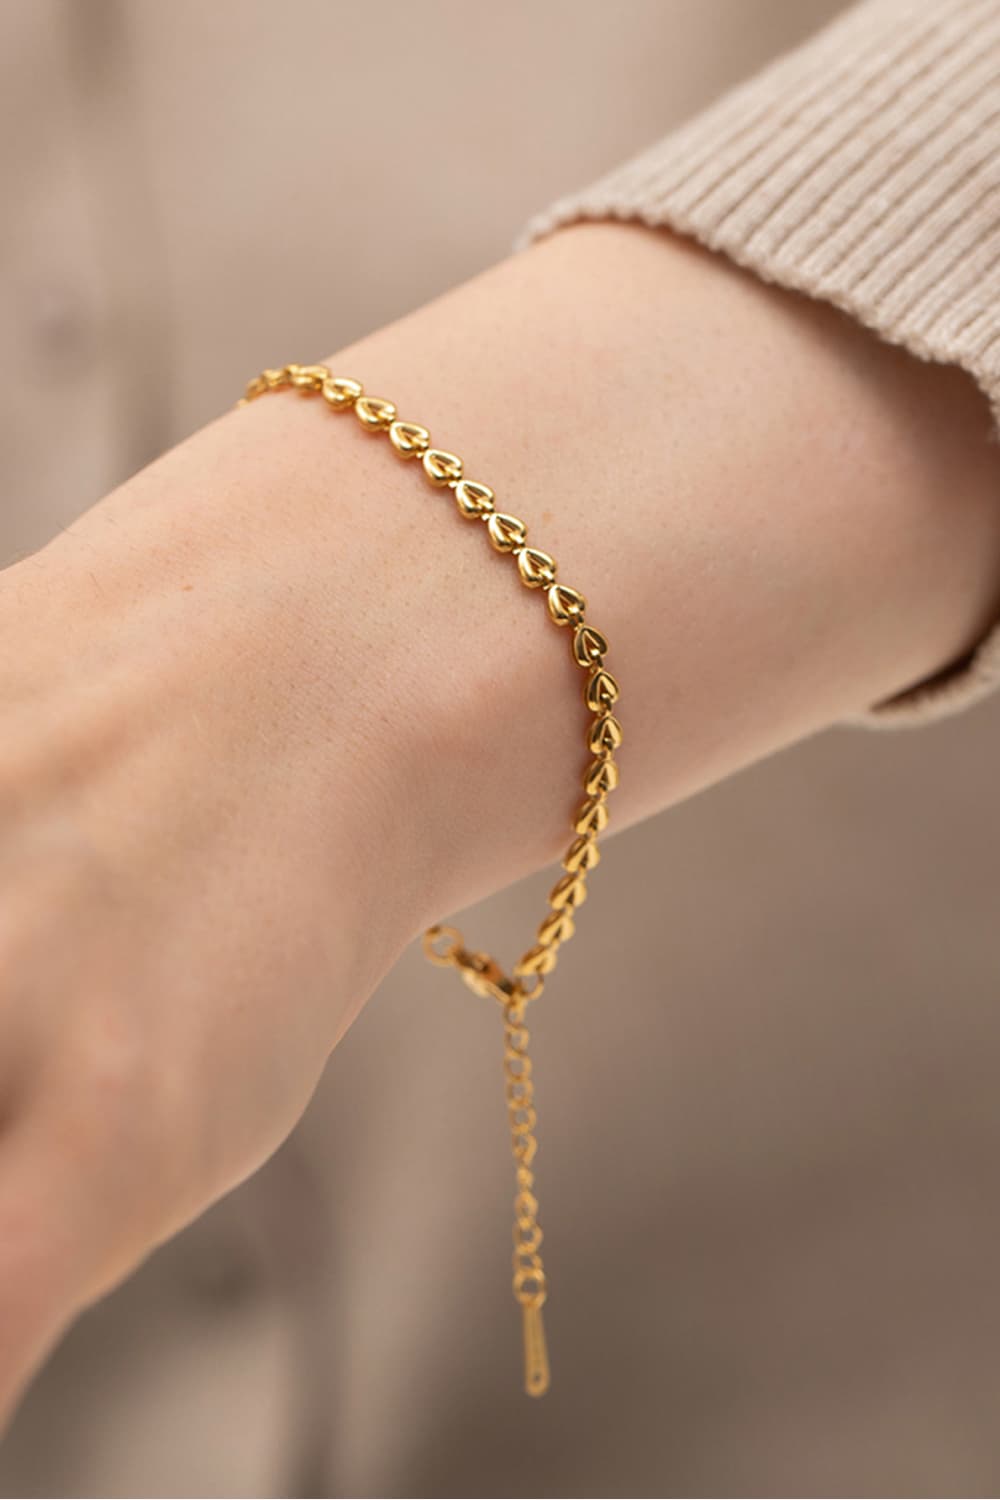 Heart Chain Lobster Clasp Bracelet - Gold / One Size - Women’s Jewelry - Bracelets - 3 - 2024